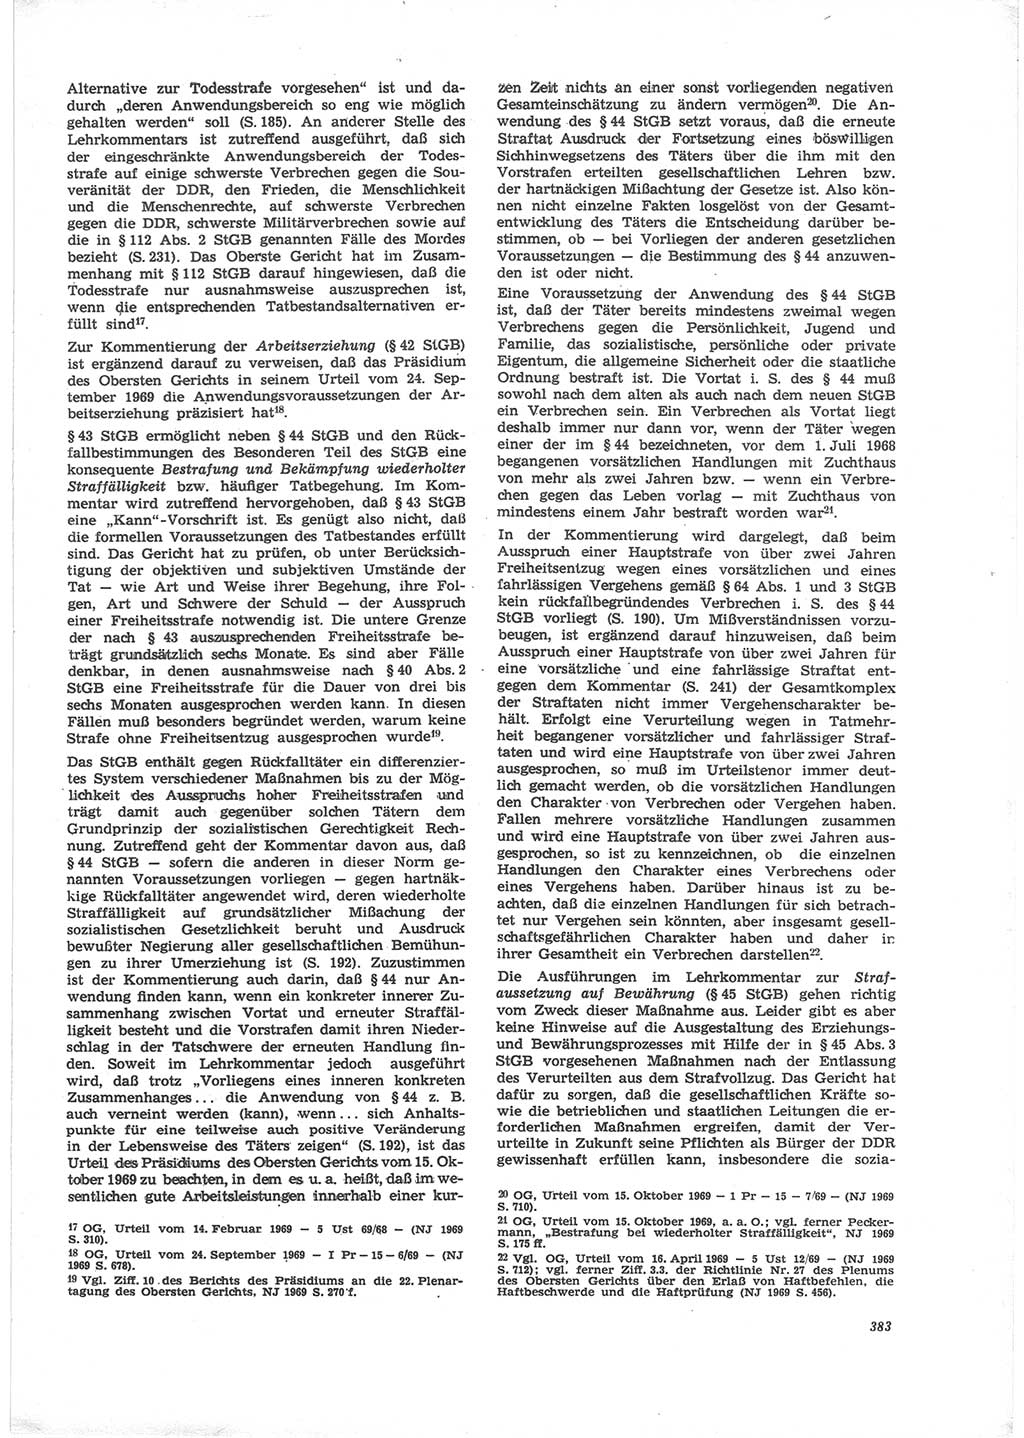 Neue Justiz (NJ), Zeitschrift für Recht und Rechtswissenschaft [Deutsche Demokratische Republik (DDR)], 24. Jahrgang 1970, Seite 383 (NJ DDR 1970, S. 383)